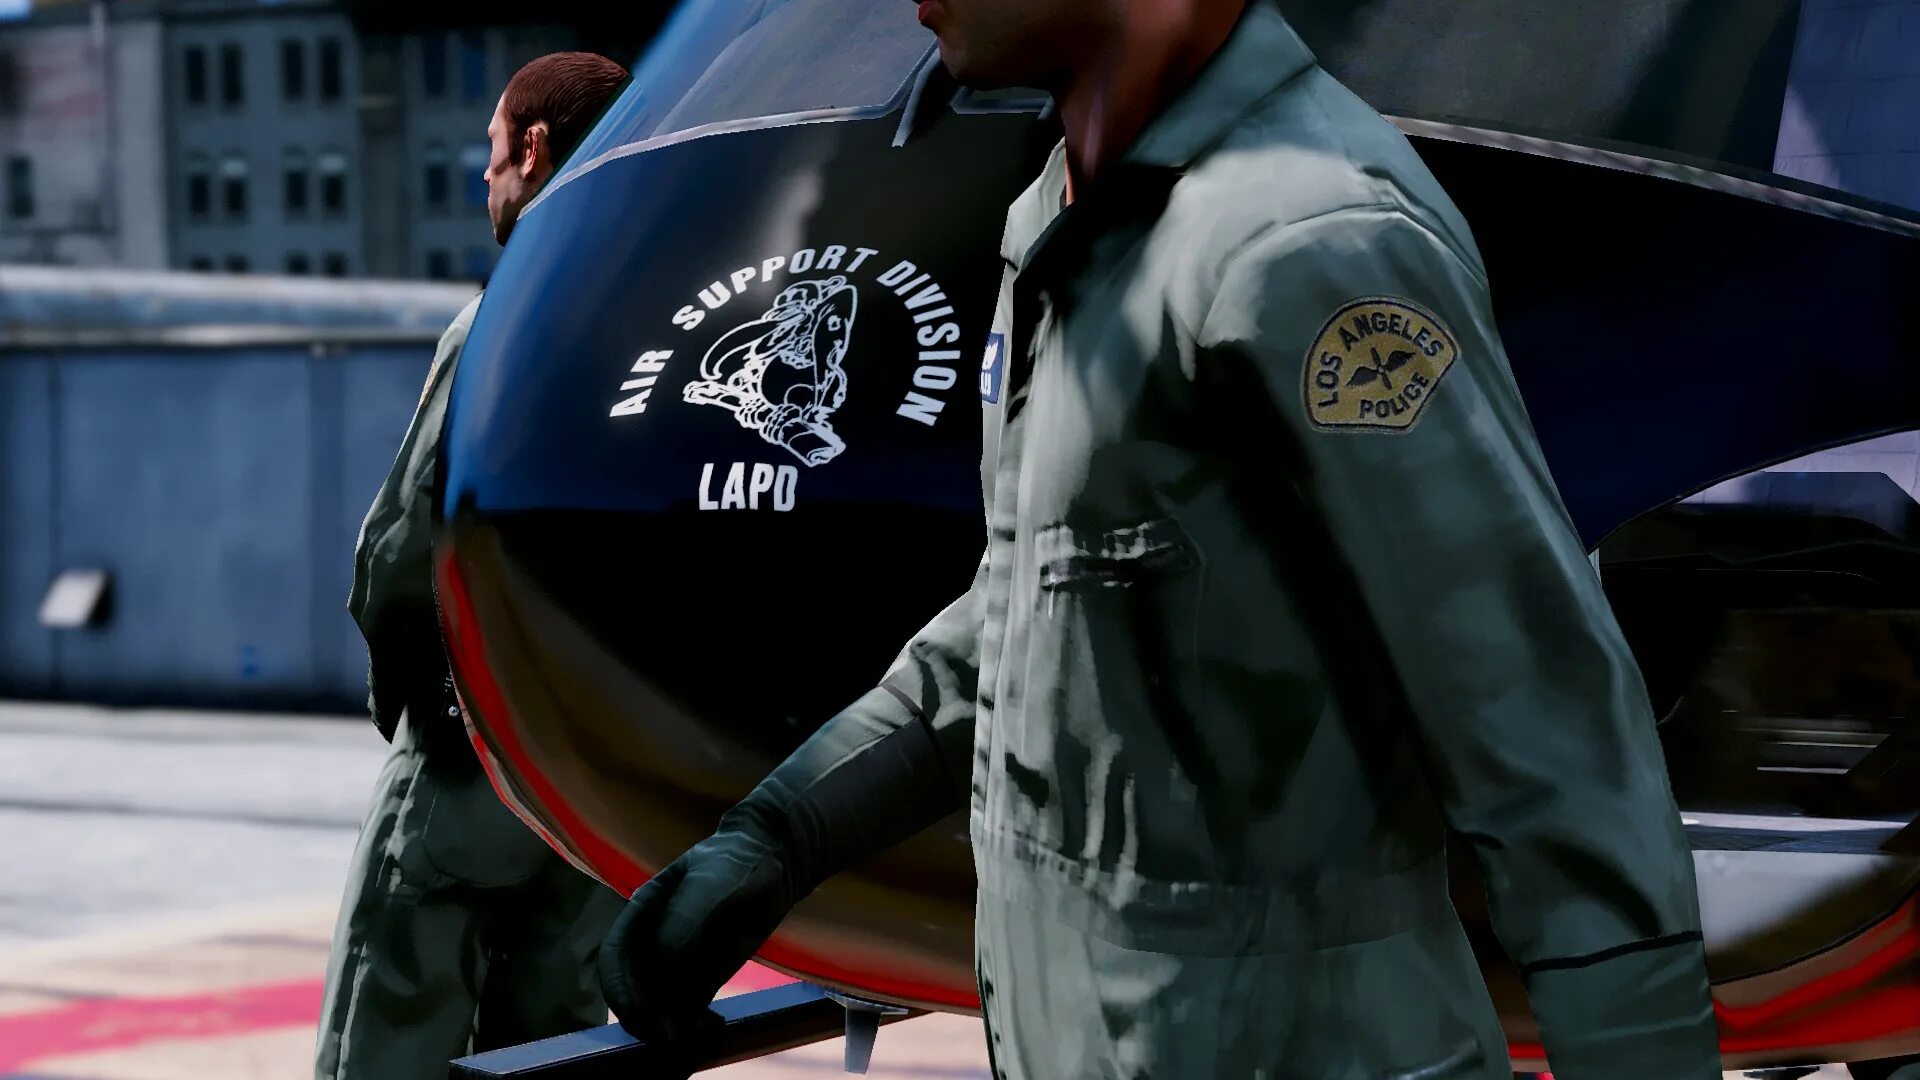 Air support. LAPD Air support Division. Air Unit LAPD. LAPD SWAT вертолет. LAPD Air support Division logo.